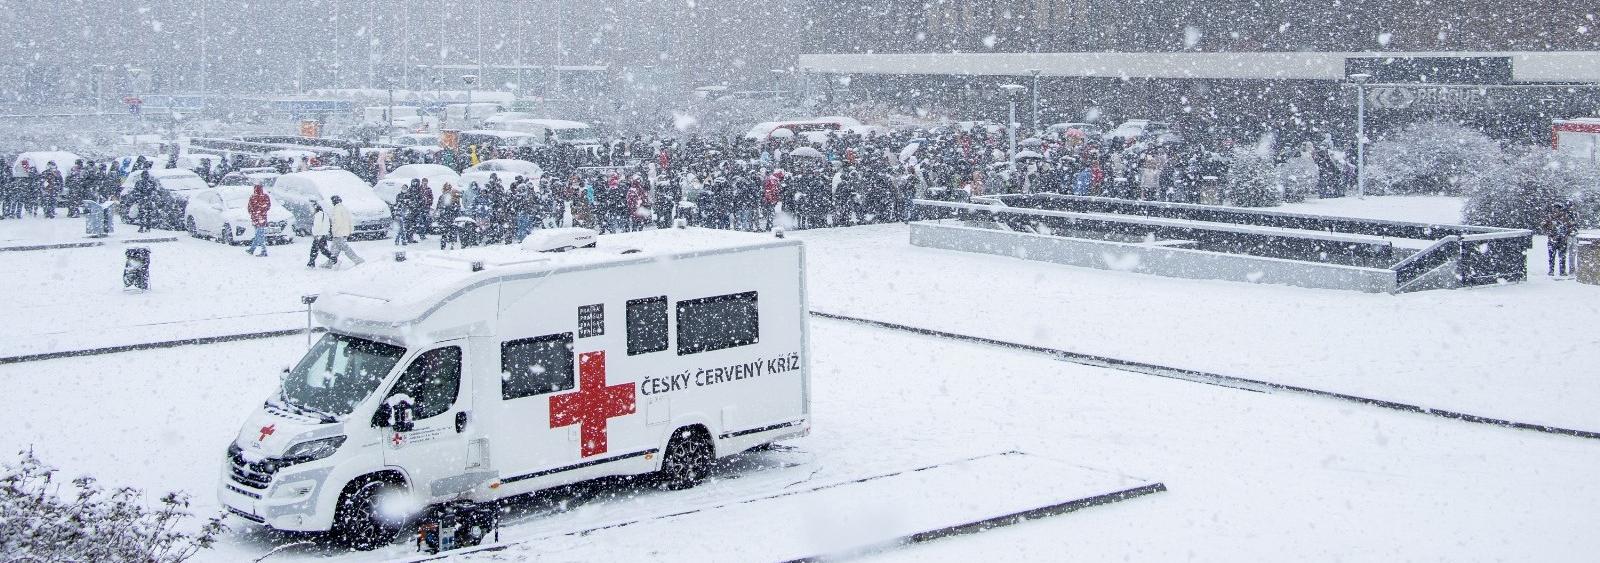 Zastupitelstvo schválilo dar ve výši 2,45 mil. korun na nové speciální vozidlo pro Český červený kříž